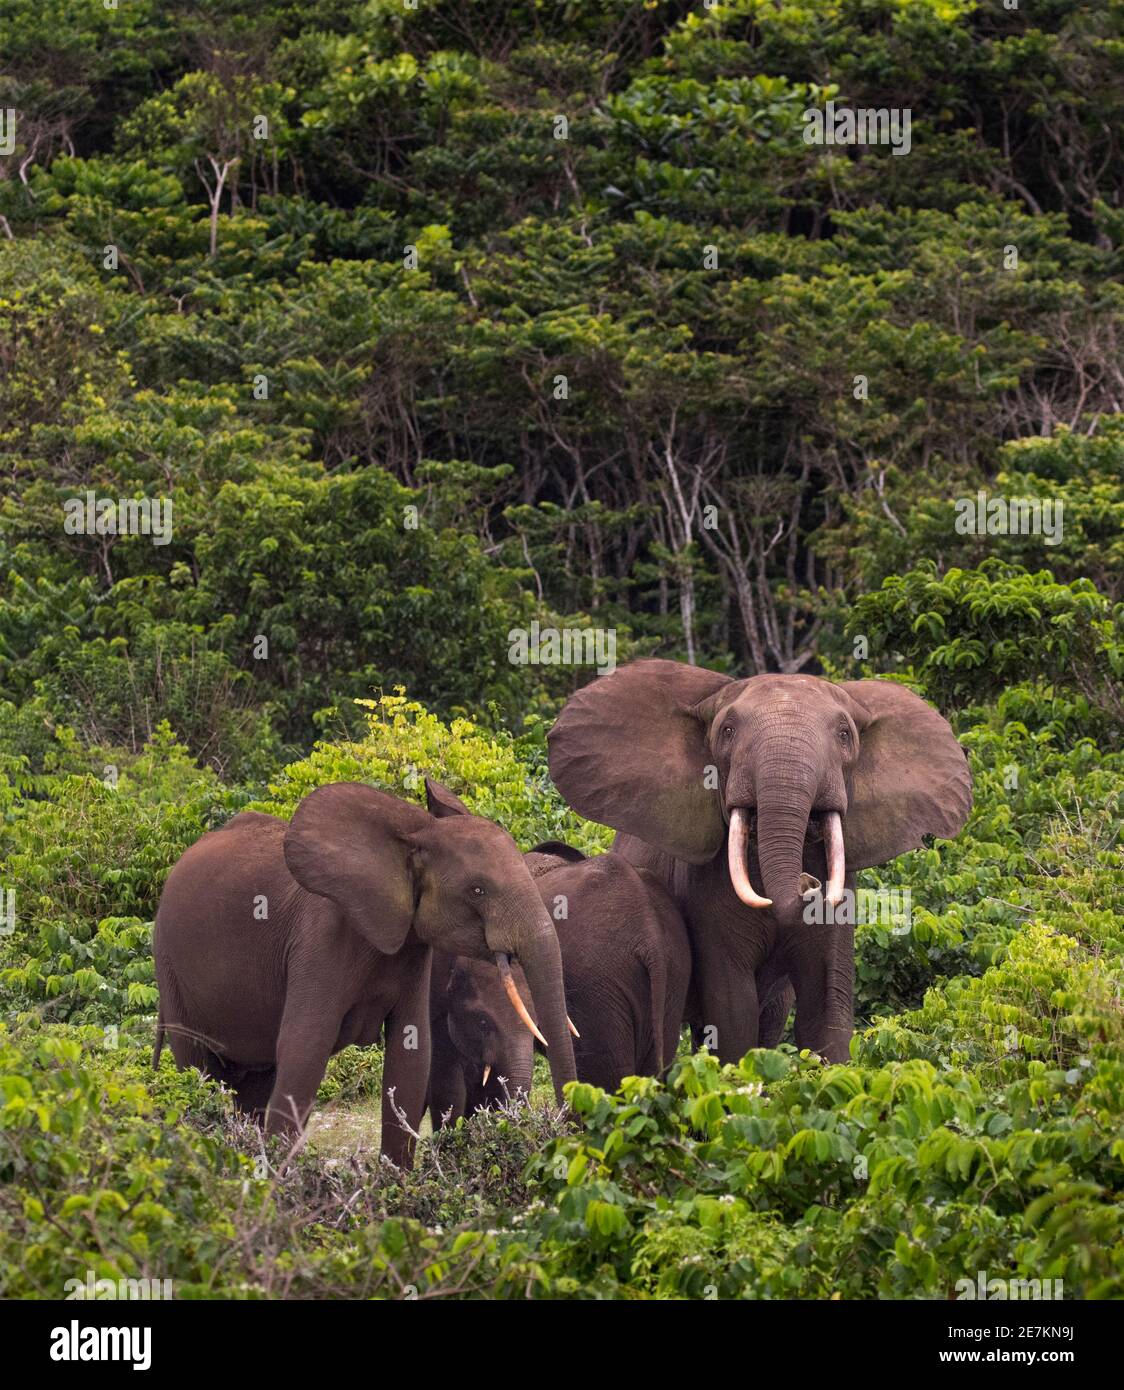 Elefante della foresta africana (Loxodonta cyclotis), famiglia in stretta formazione protettiva con i giovani nel centro, Parco Nazionale di Loango, Gabon. Foto Stock